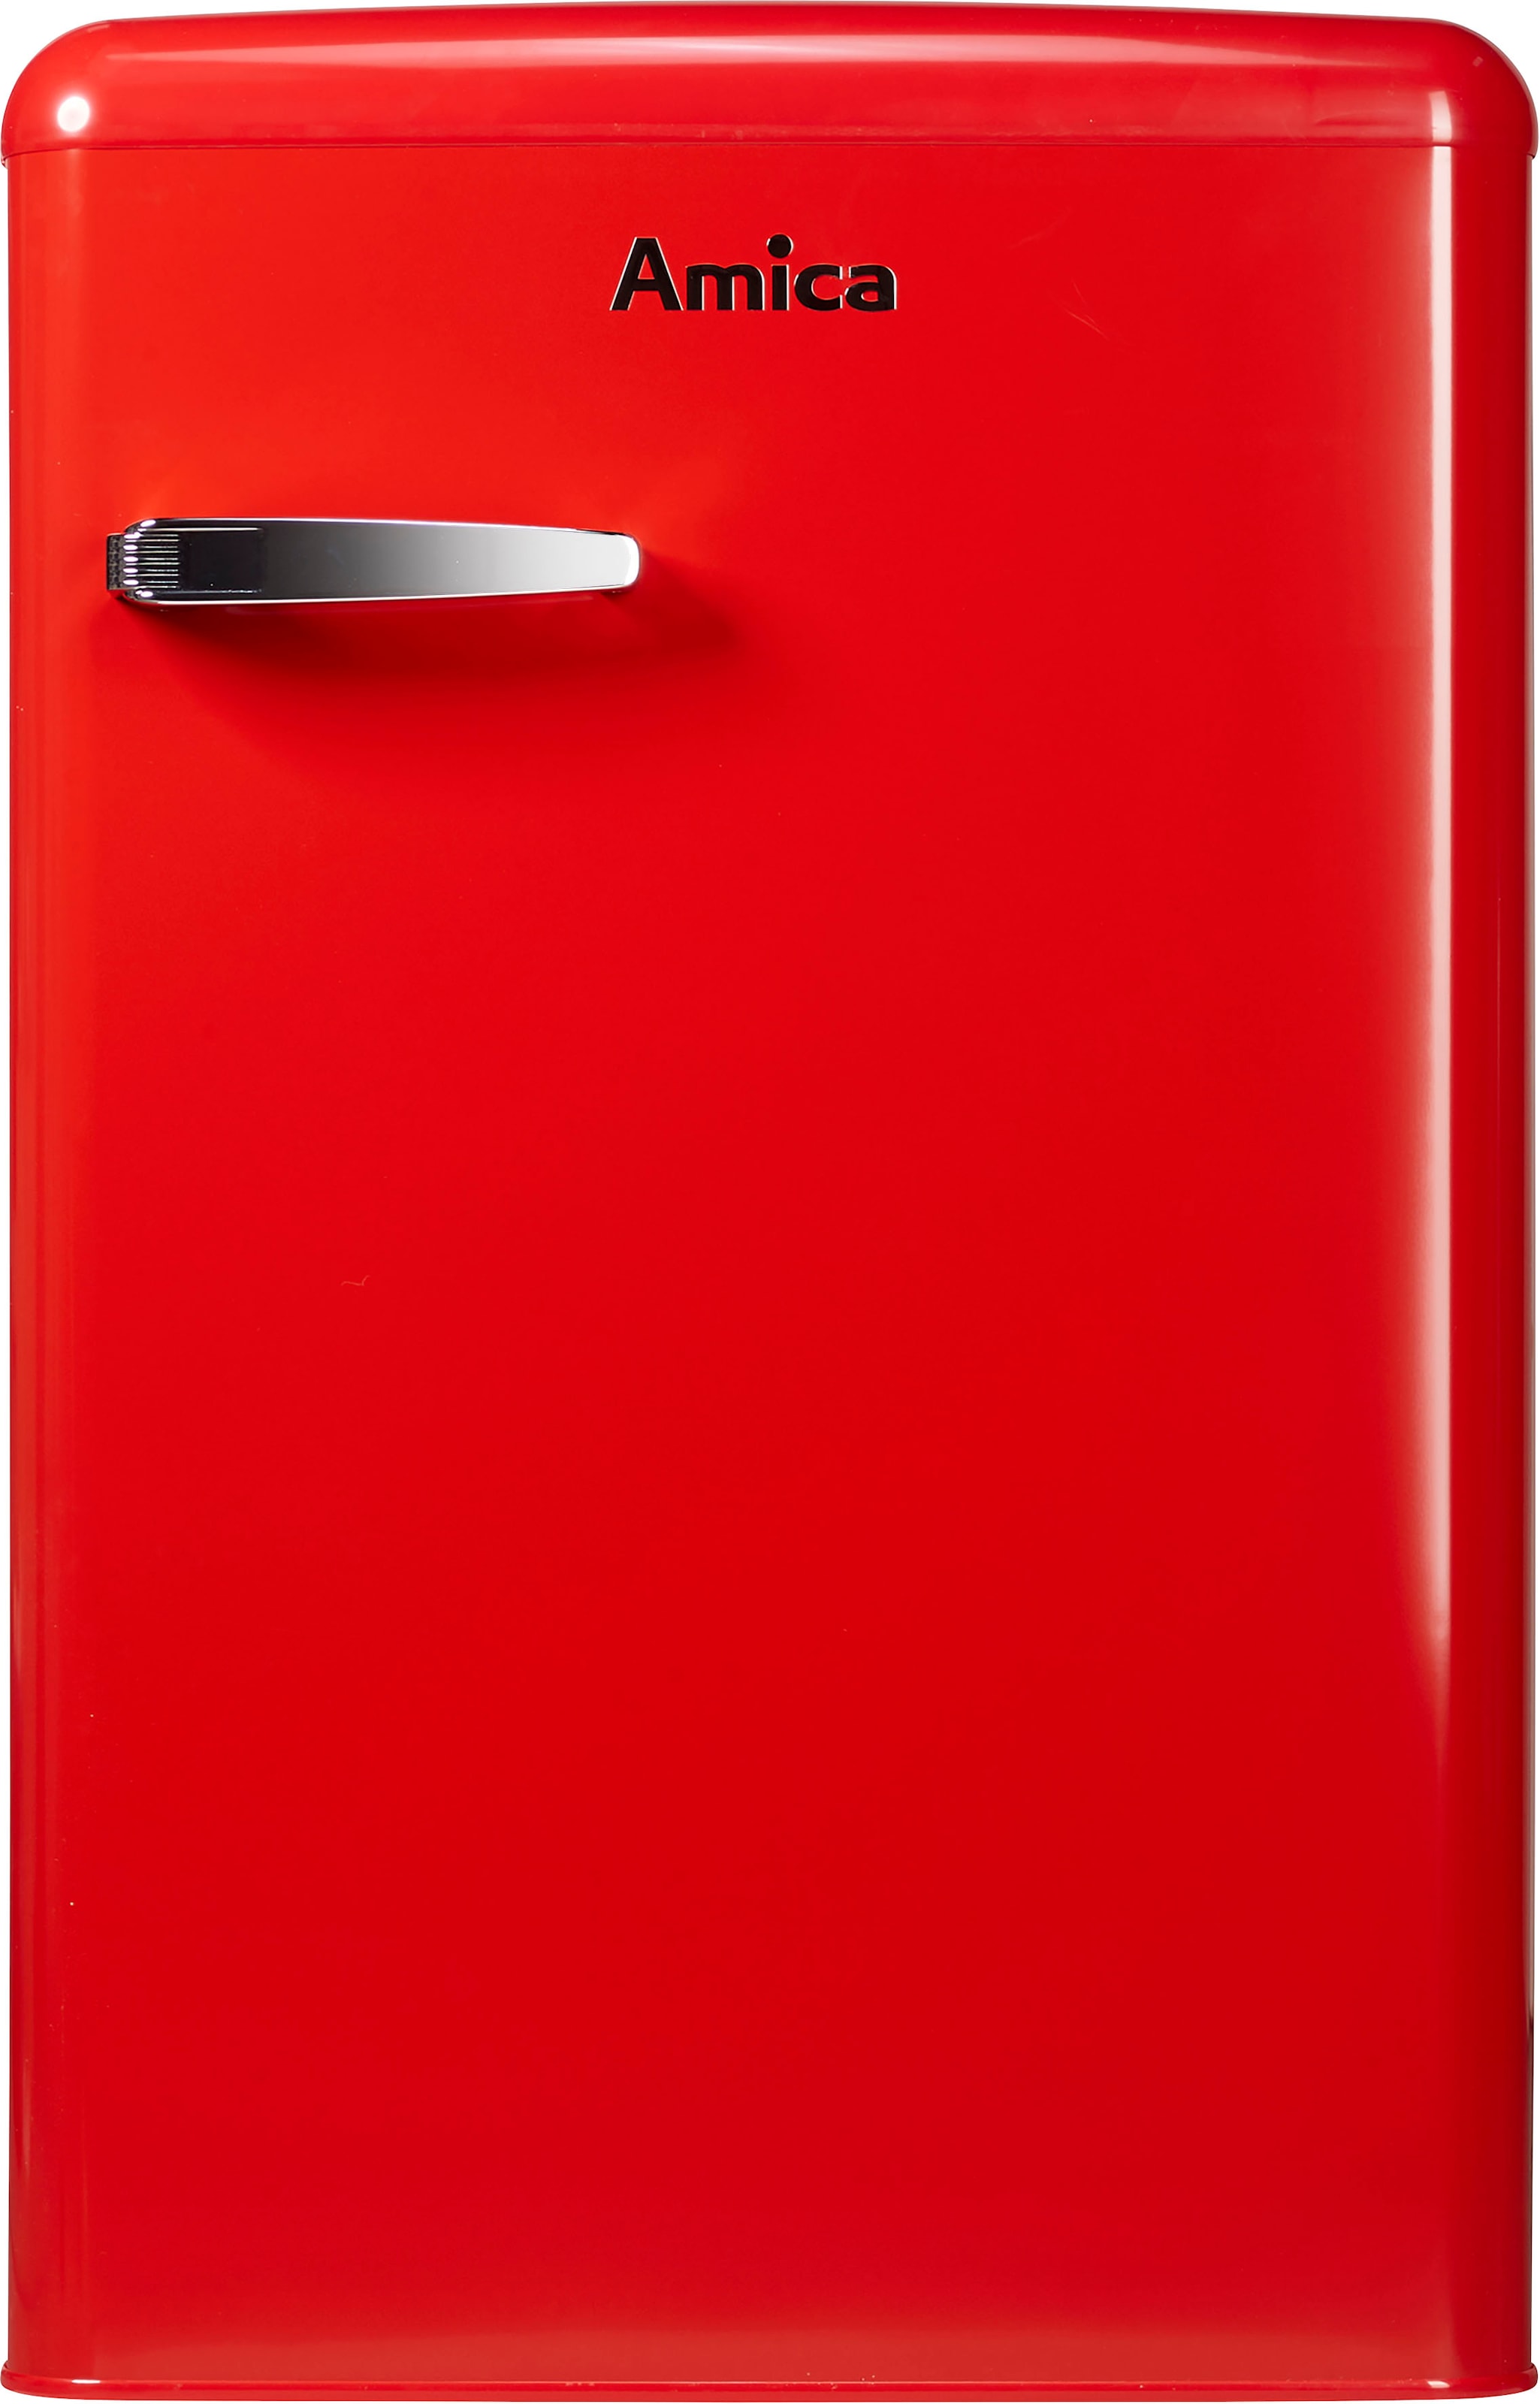 Amica Vollraumkühlschrank, VKS 15620-1 R, 87,5 cm hoch, 55 cm breit